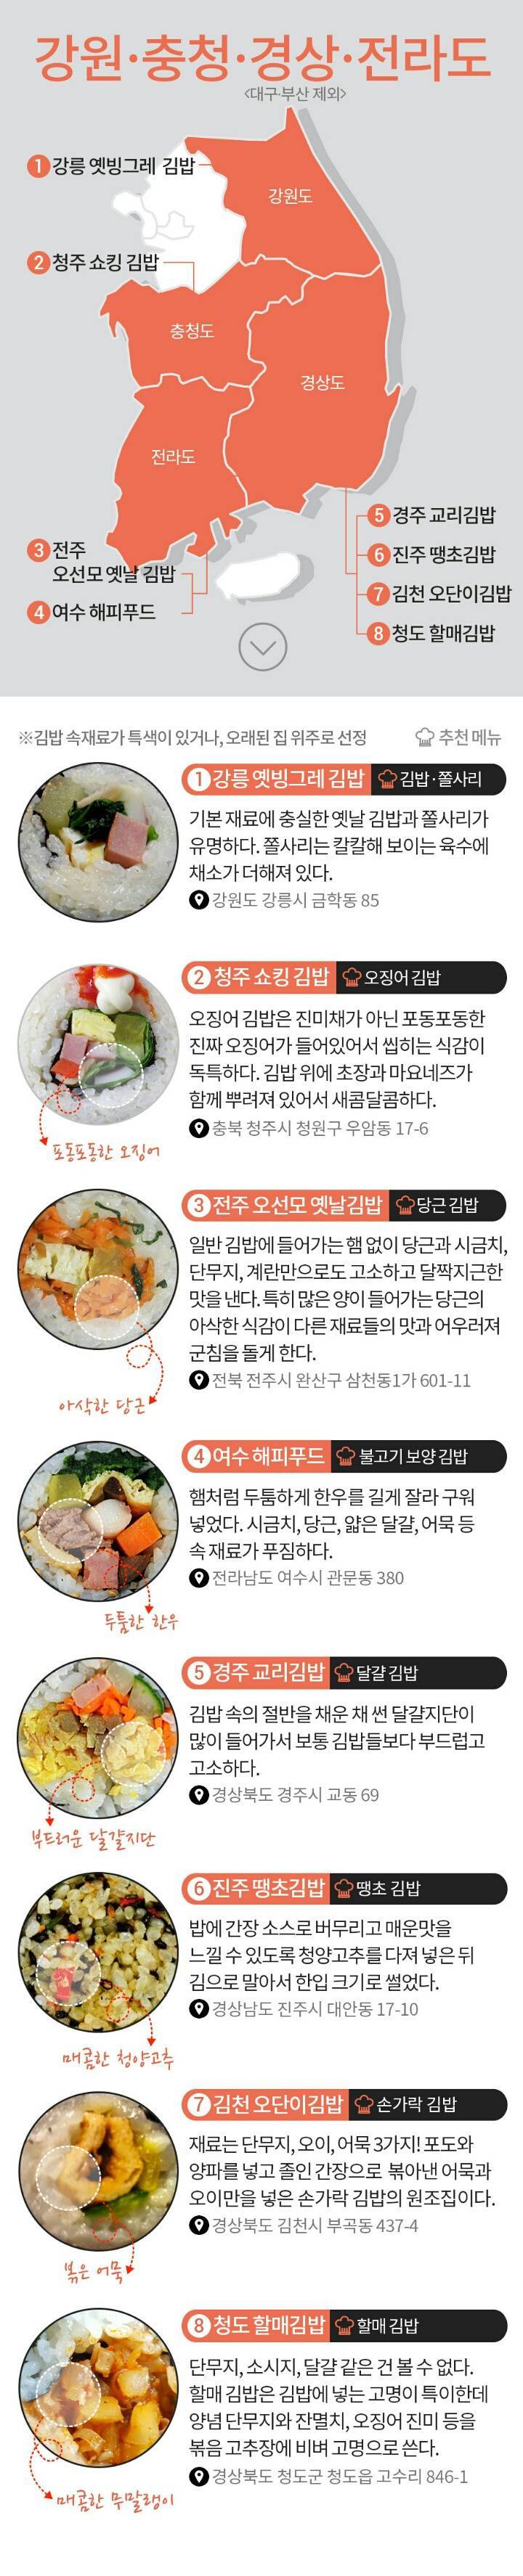 전국 이색김밥 맛집 지도4.jpg